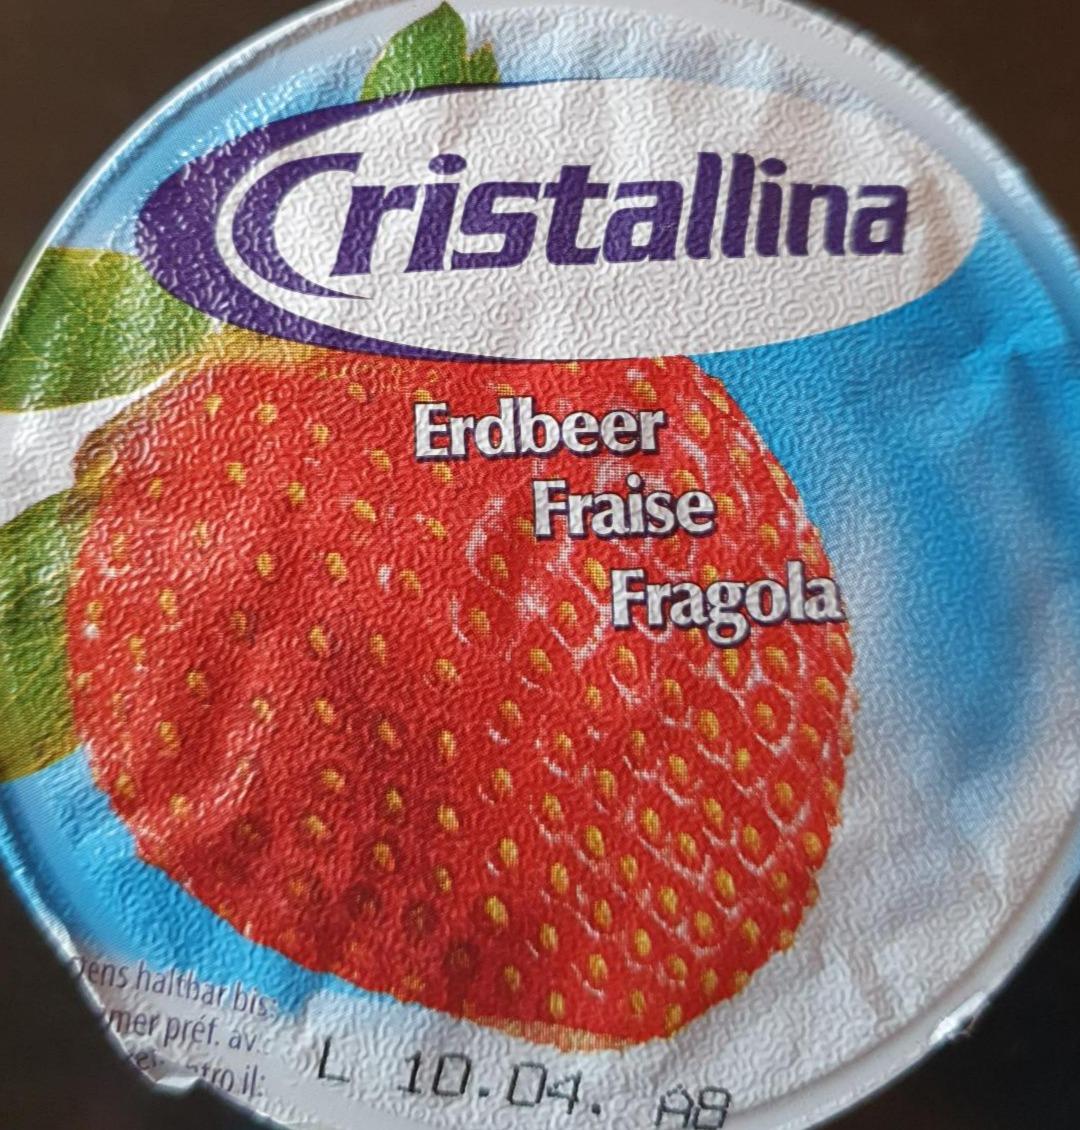 Fotografie - Erdbeer Cristallina